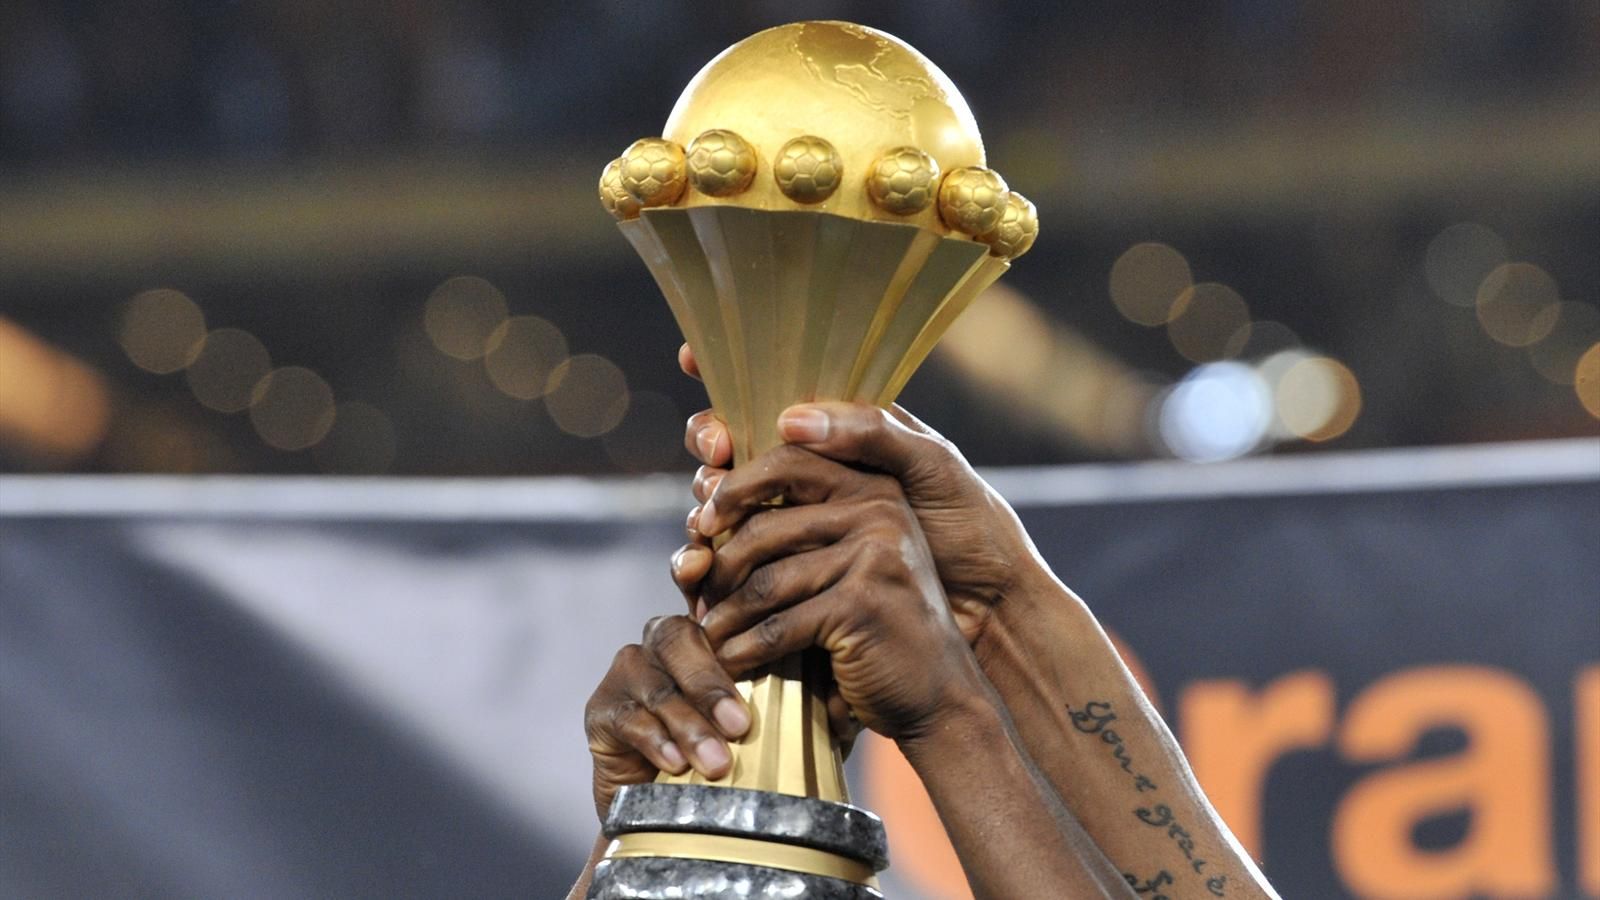 أمم إفريقيا 2019: الرئيس الطانزاني يكافئ لاعبي المنتخب بأراض للبناء